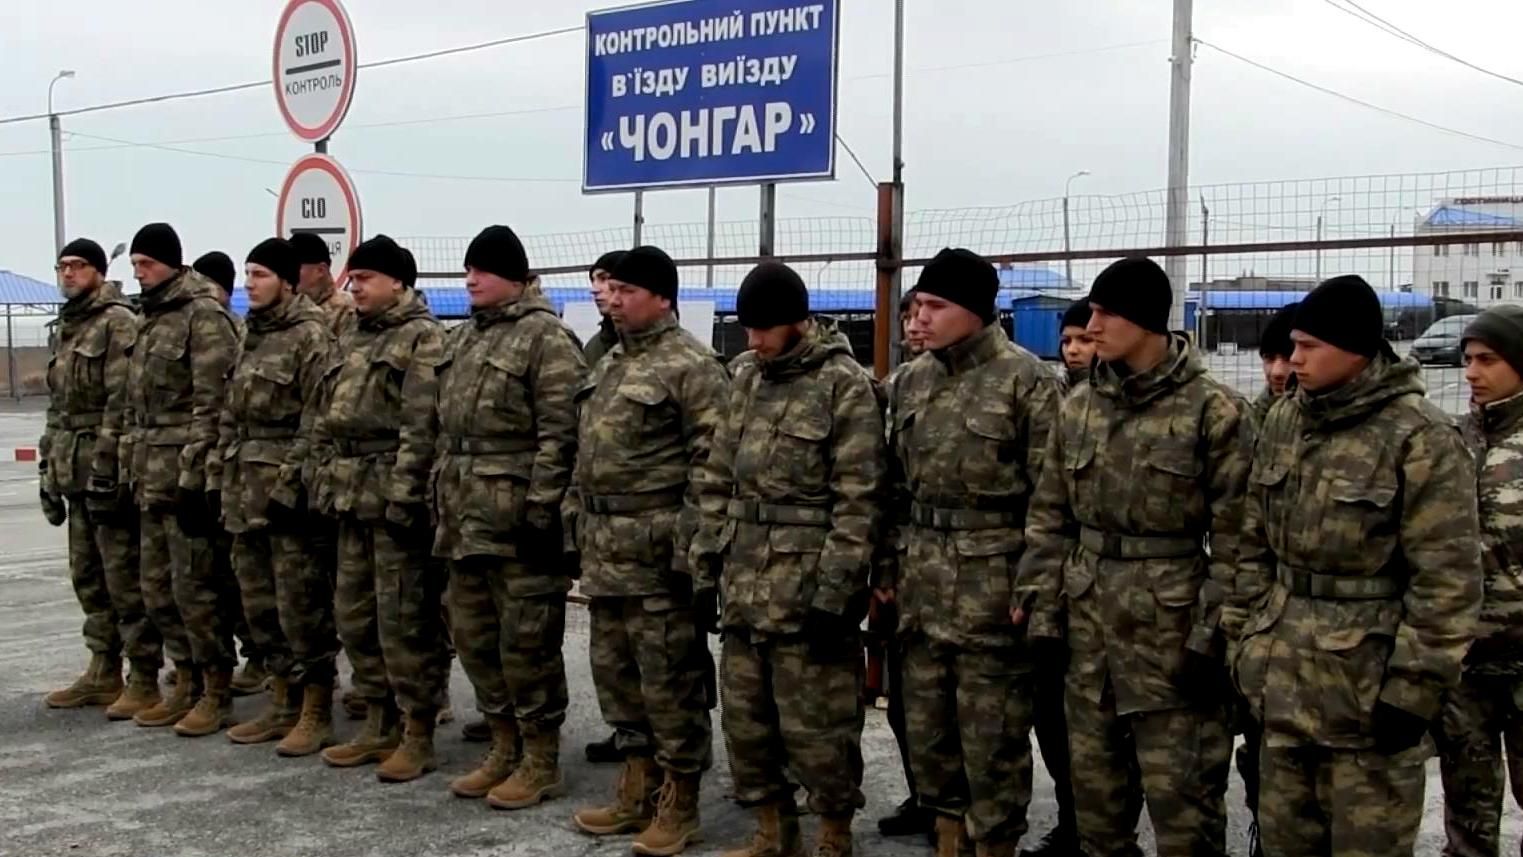 Как проходит переформатированная блокада Крыма: репортаж с "Чонгара"